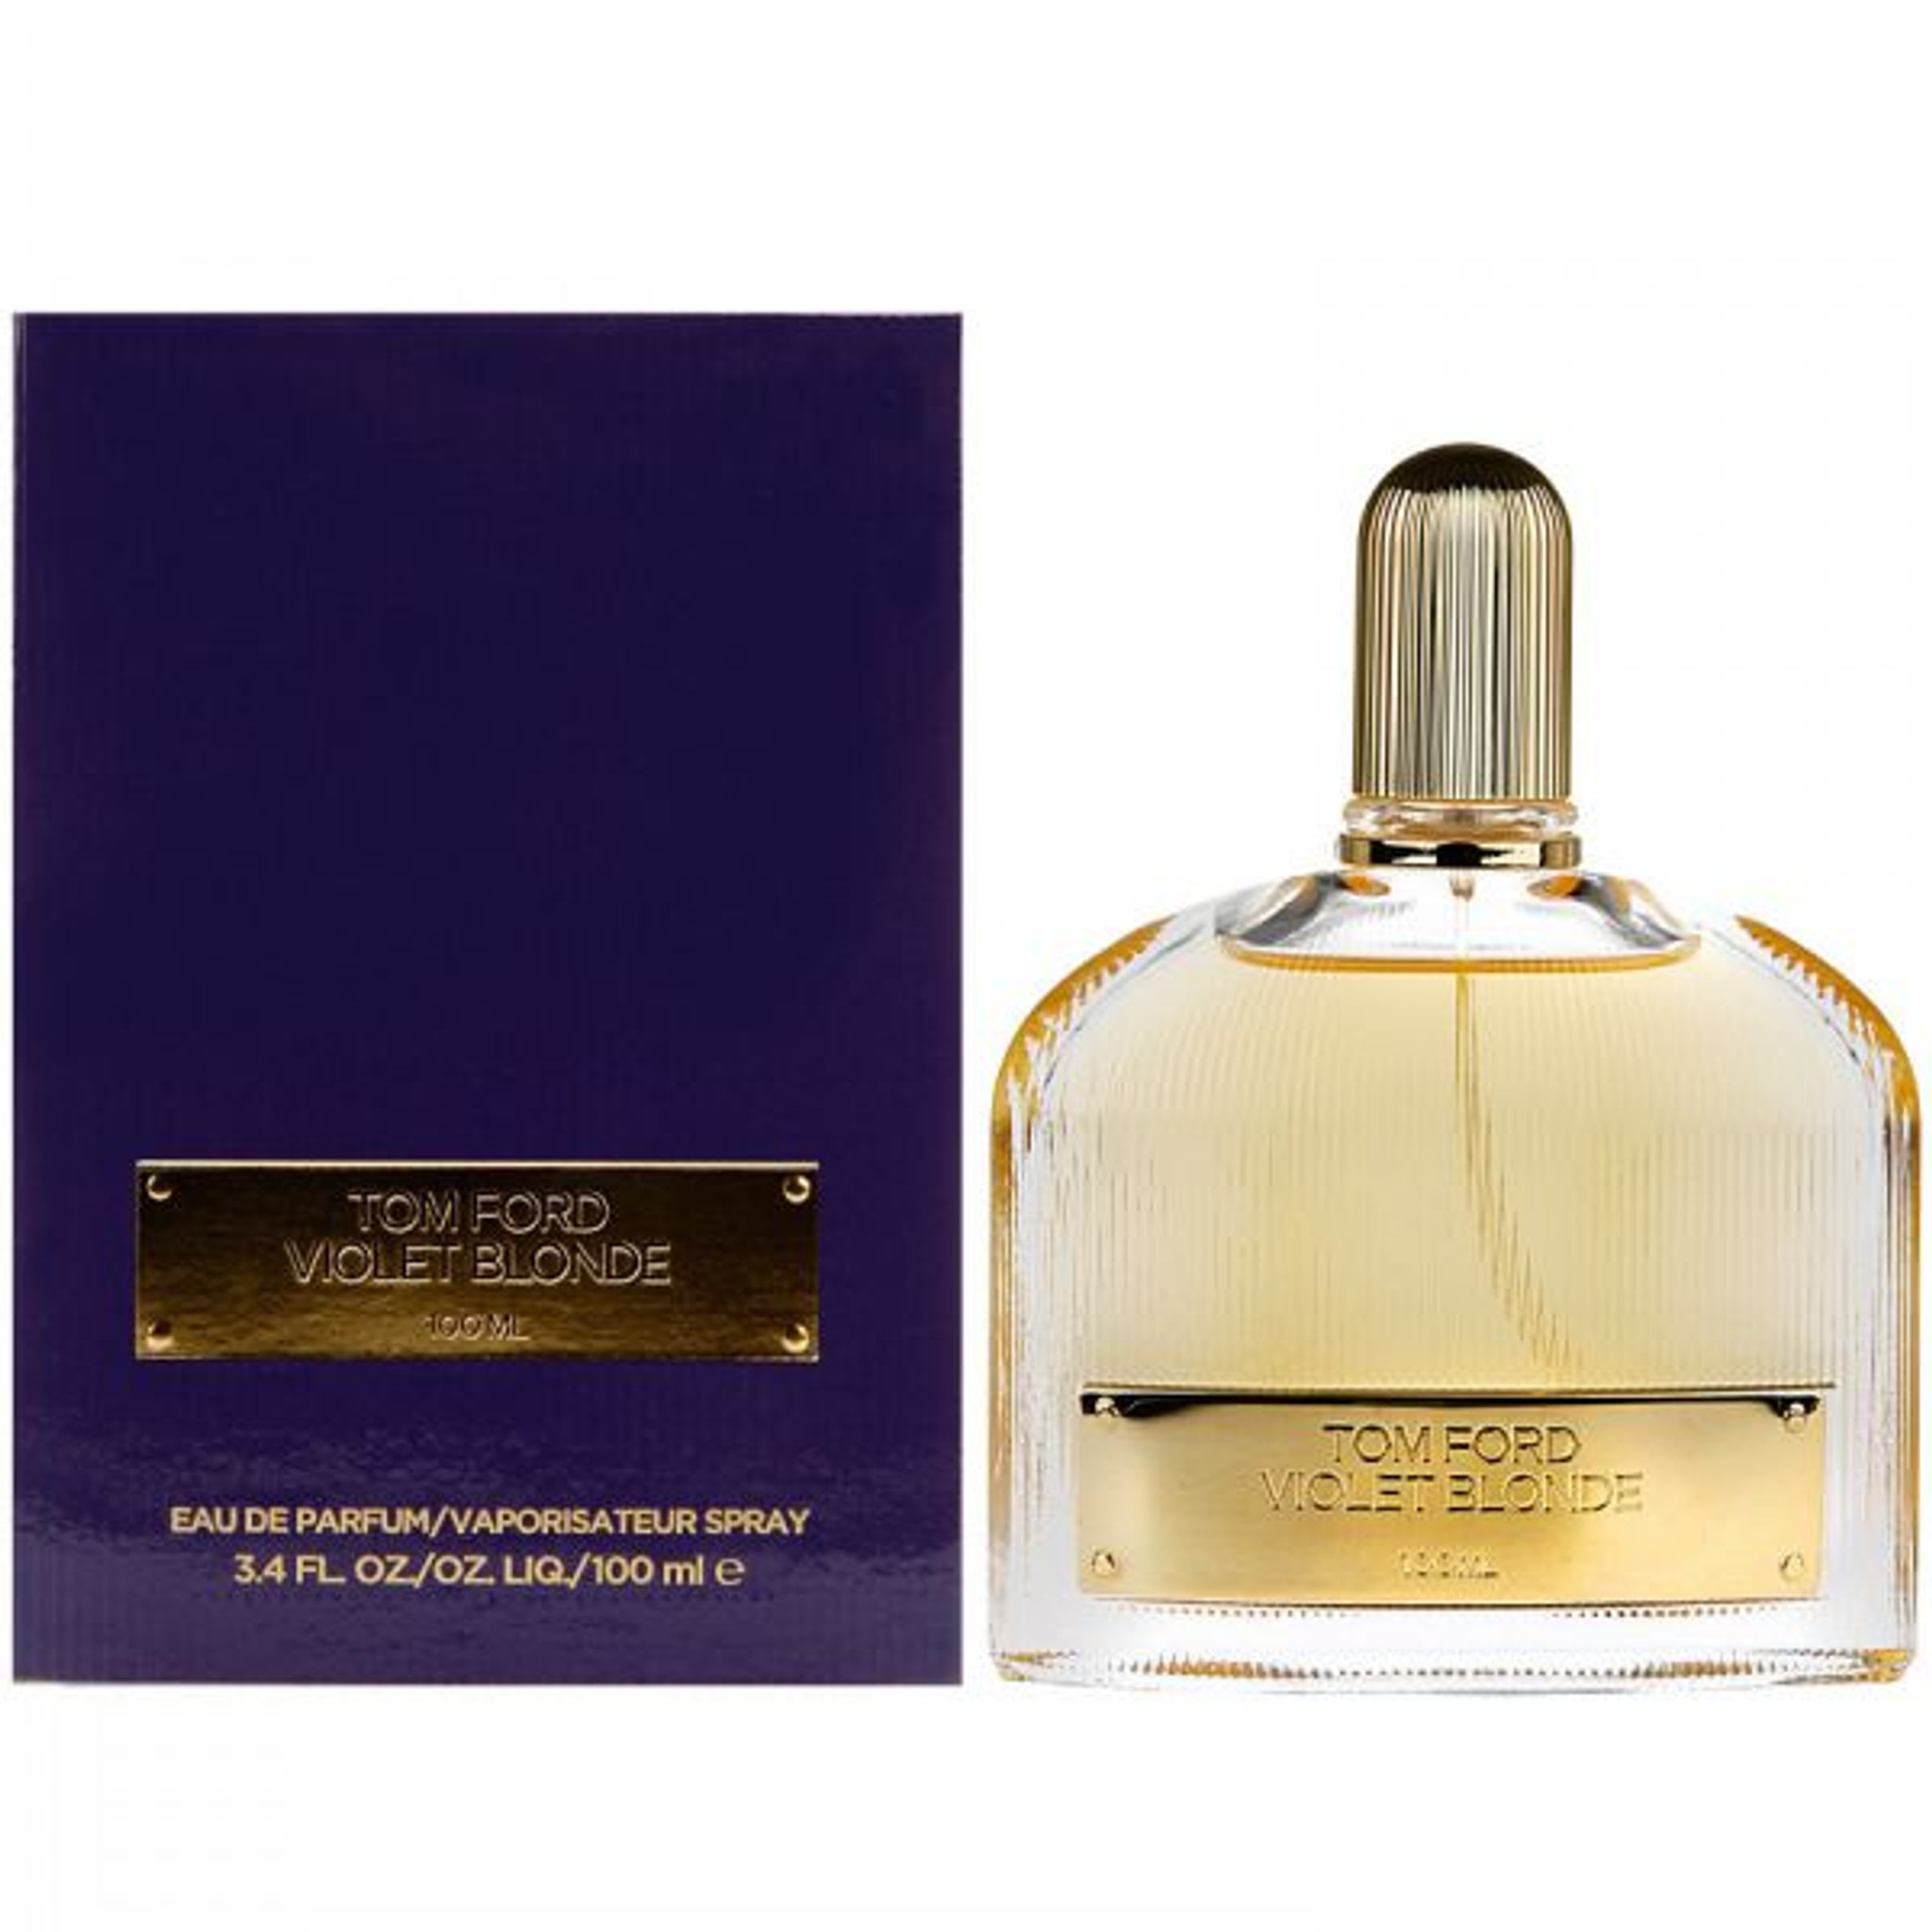 Tom Ford Violet Blonde 3.4oz Women's Eau de Parfum - HottPerfume.com